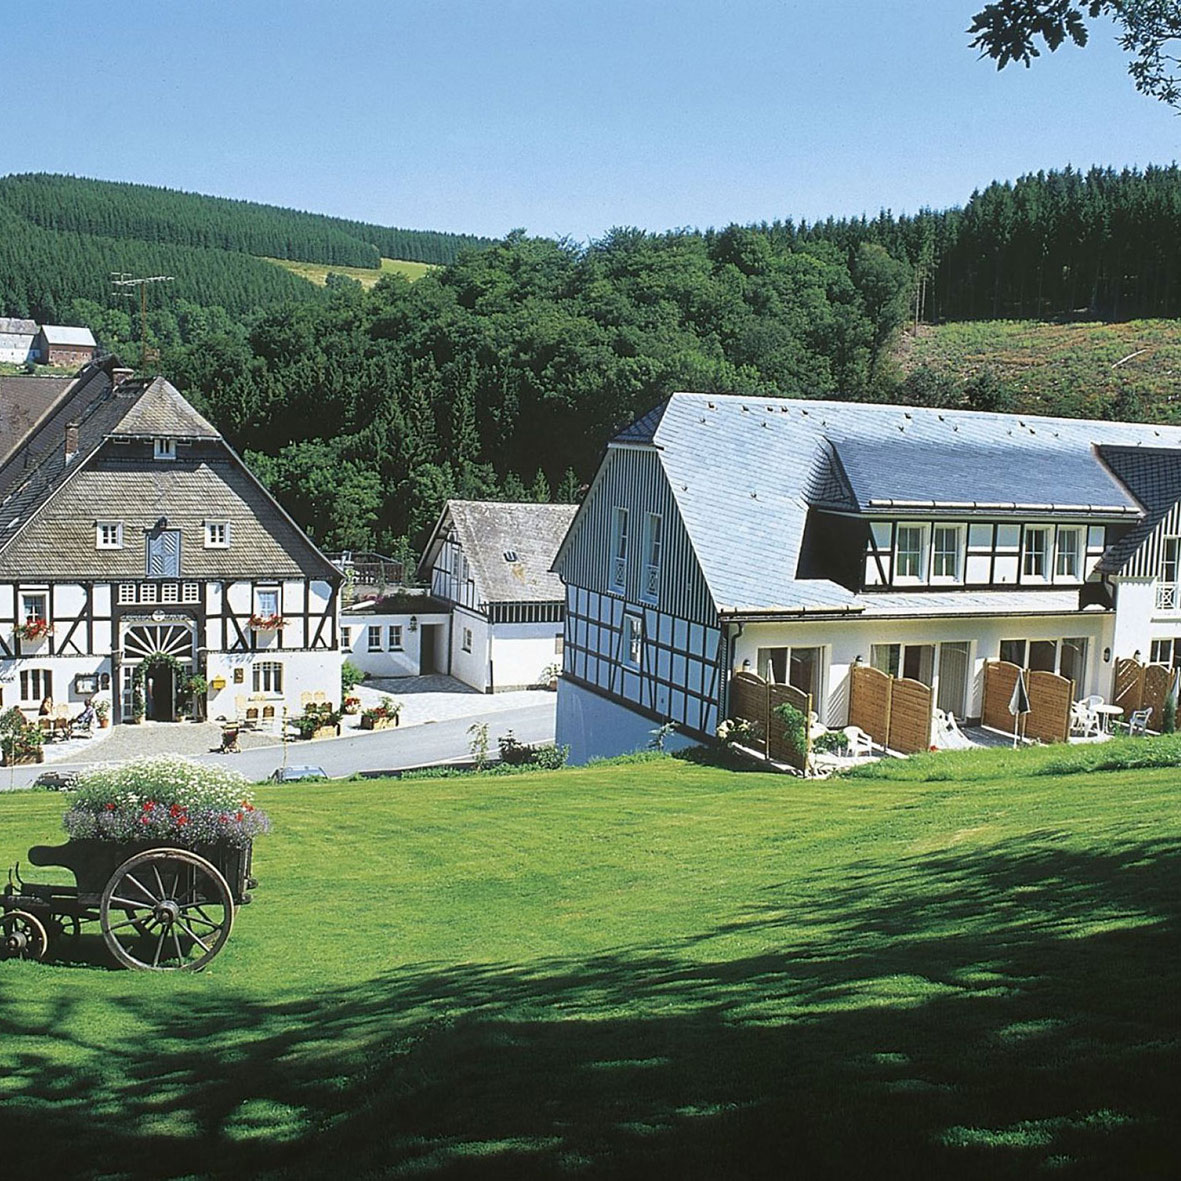 Hotel Gut Vorwald